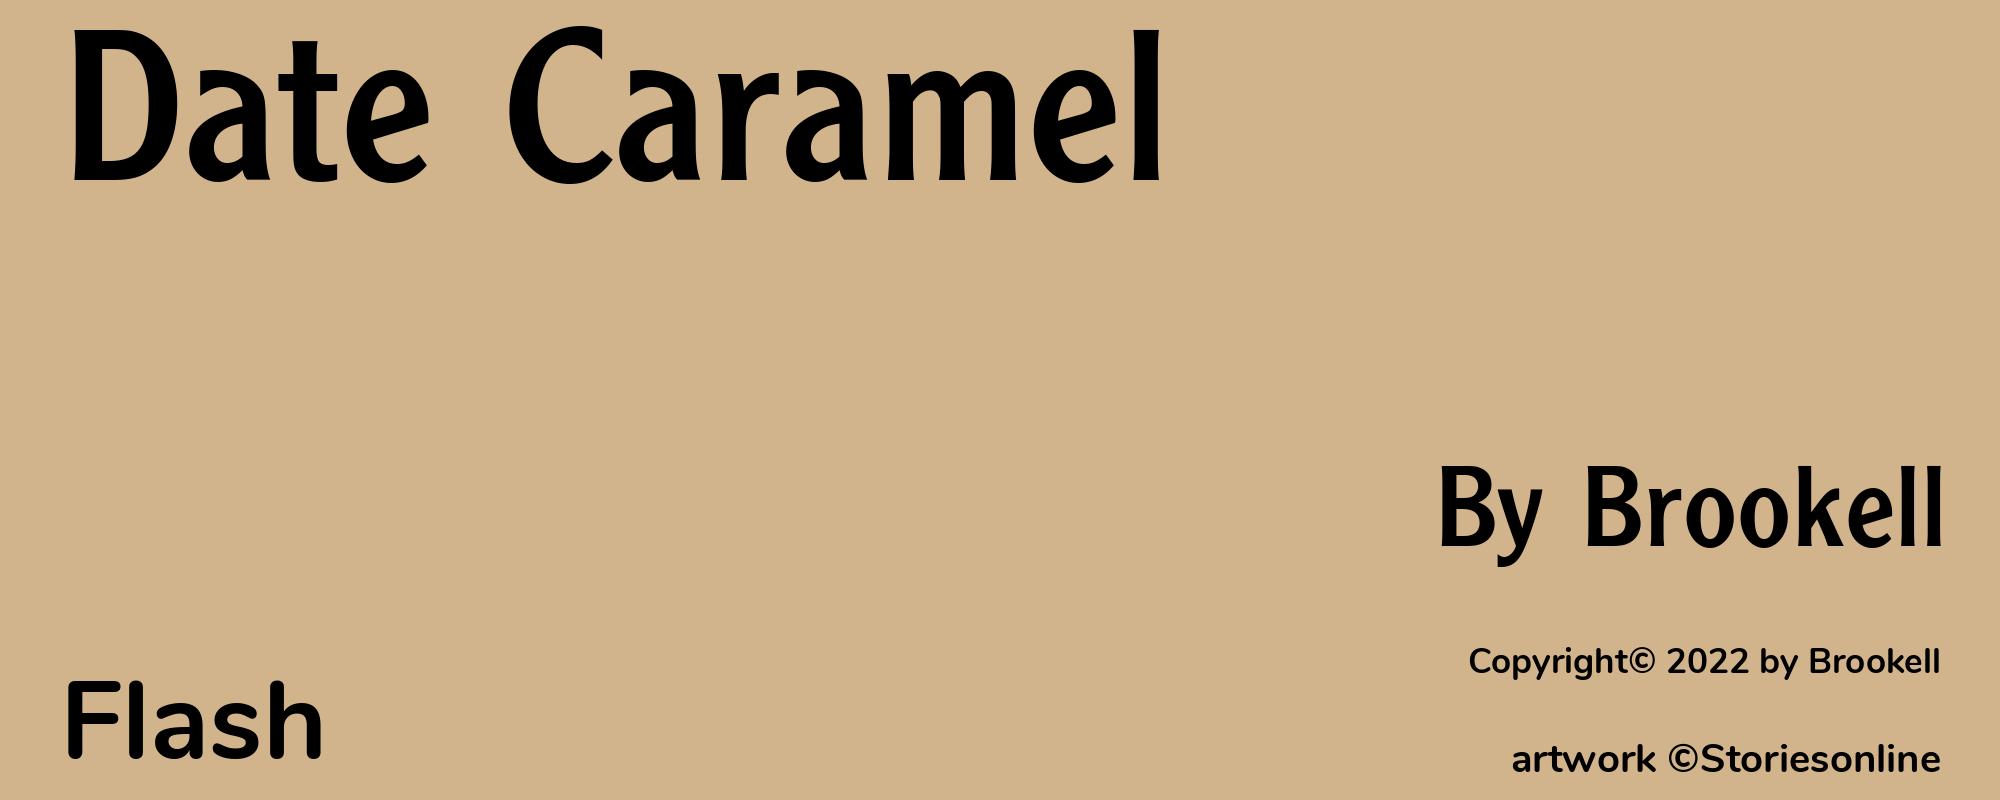 Date Caramel - Cover